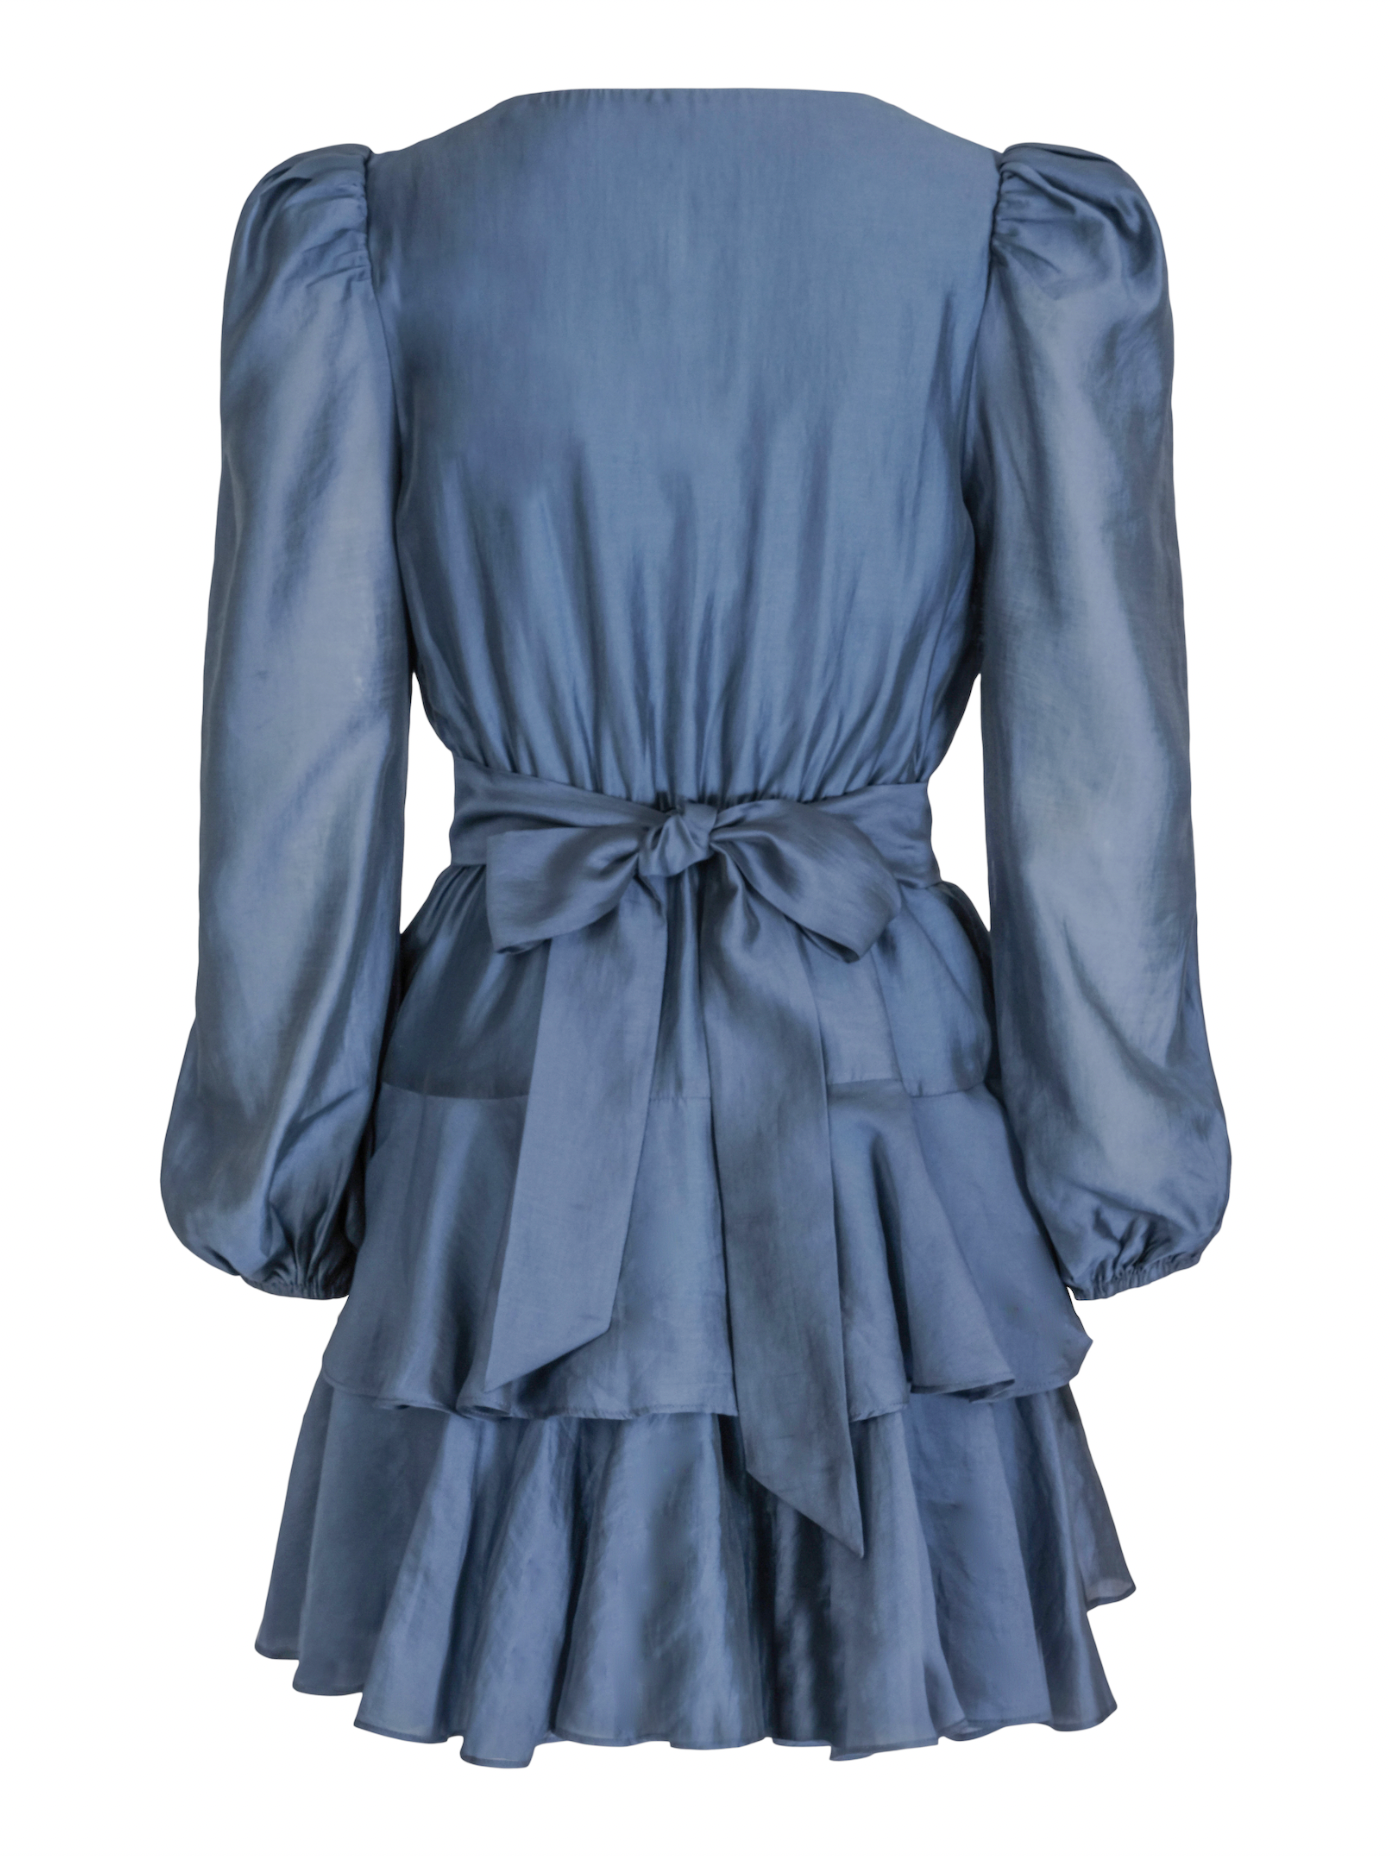 Wavy Dress - Dusty Blue